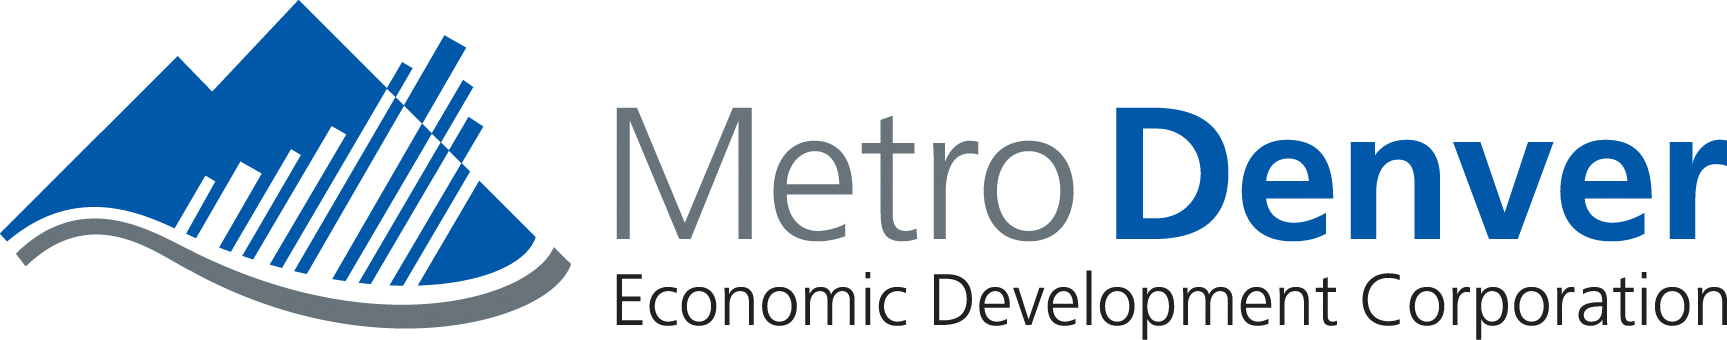 Metro Denver Economic Development Corporation